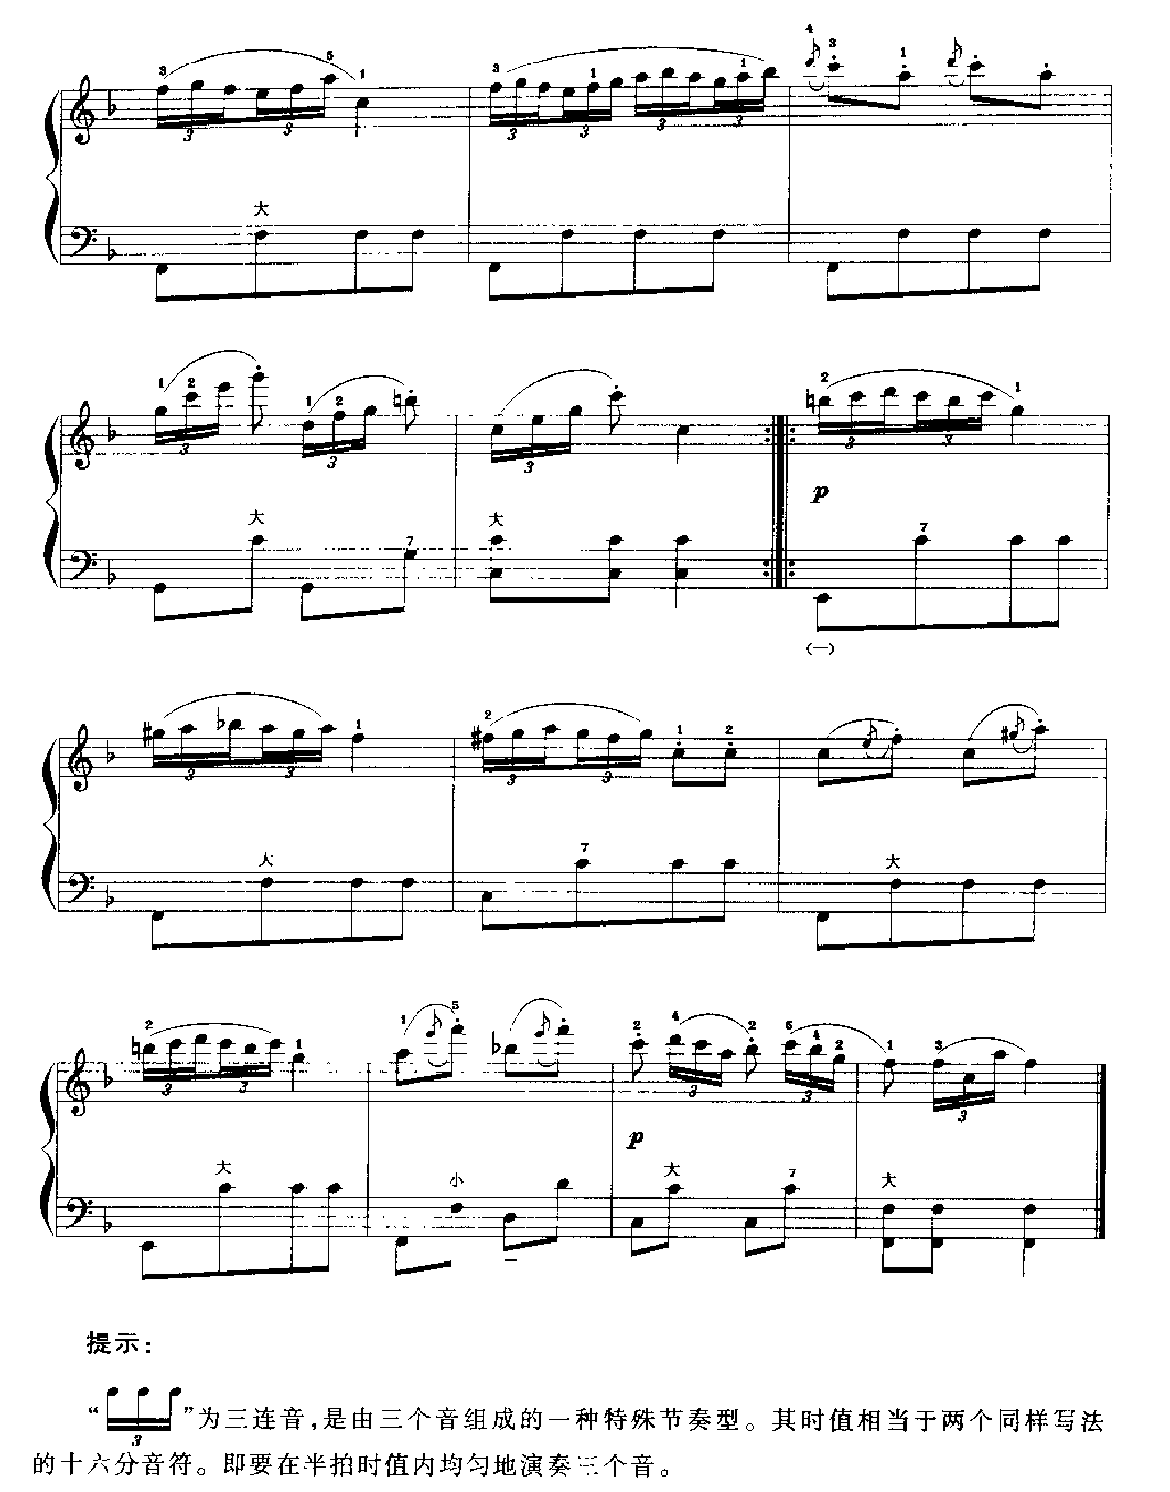 手风琴d旋律小调音阶及琶音练习2